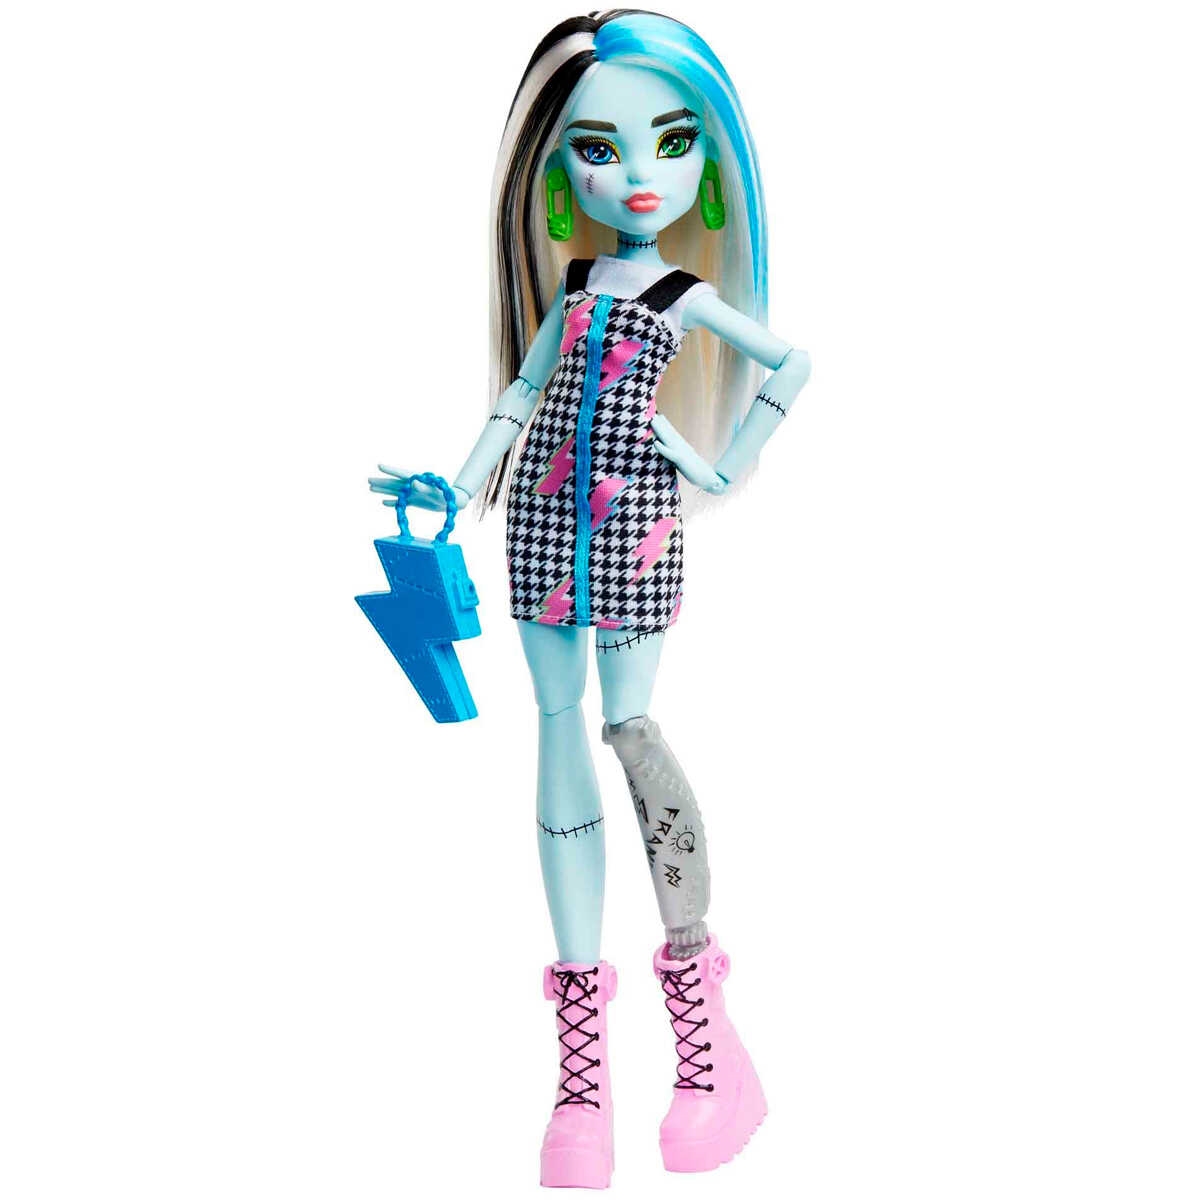 Jogo das Monster High online - Cortar Cabelo - Brinquedos de Papel